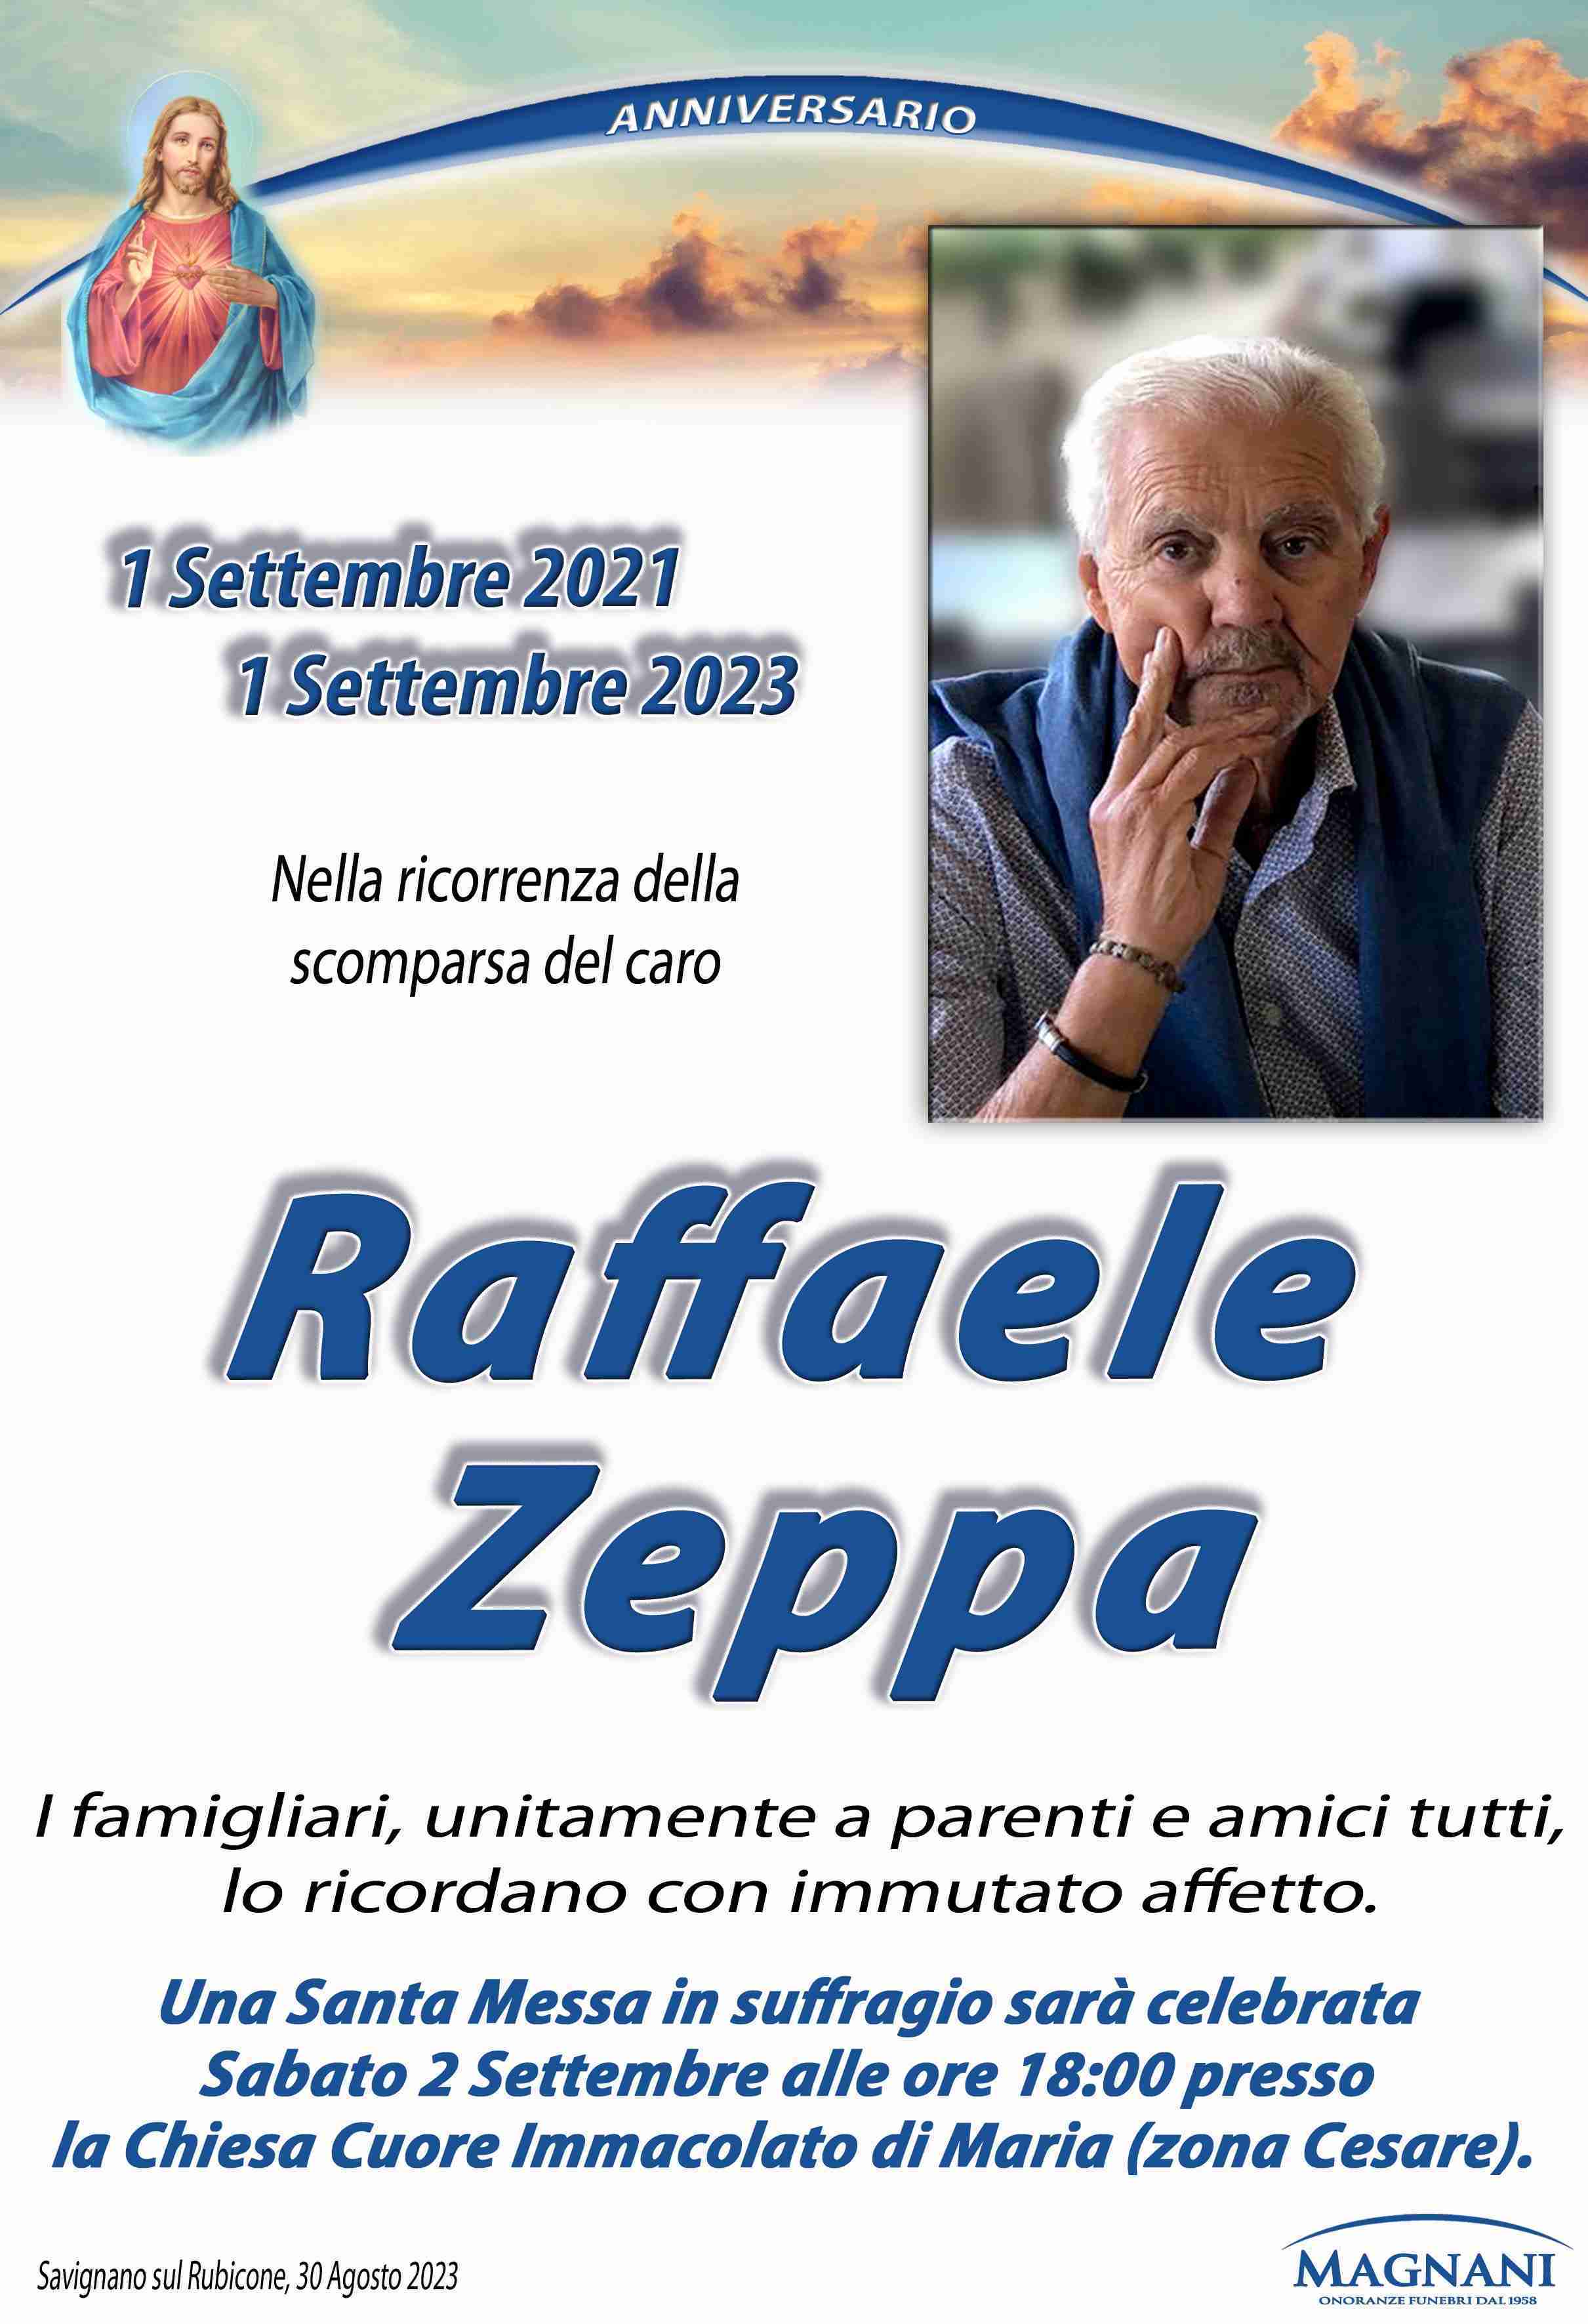 Raffaele Zeppa